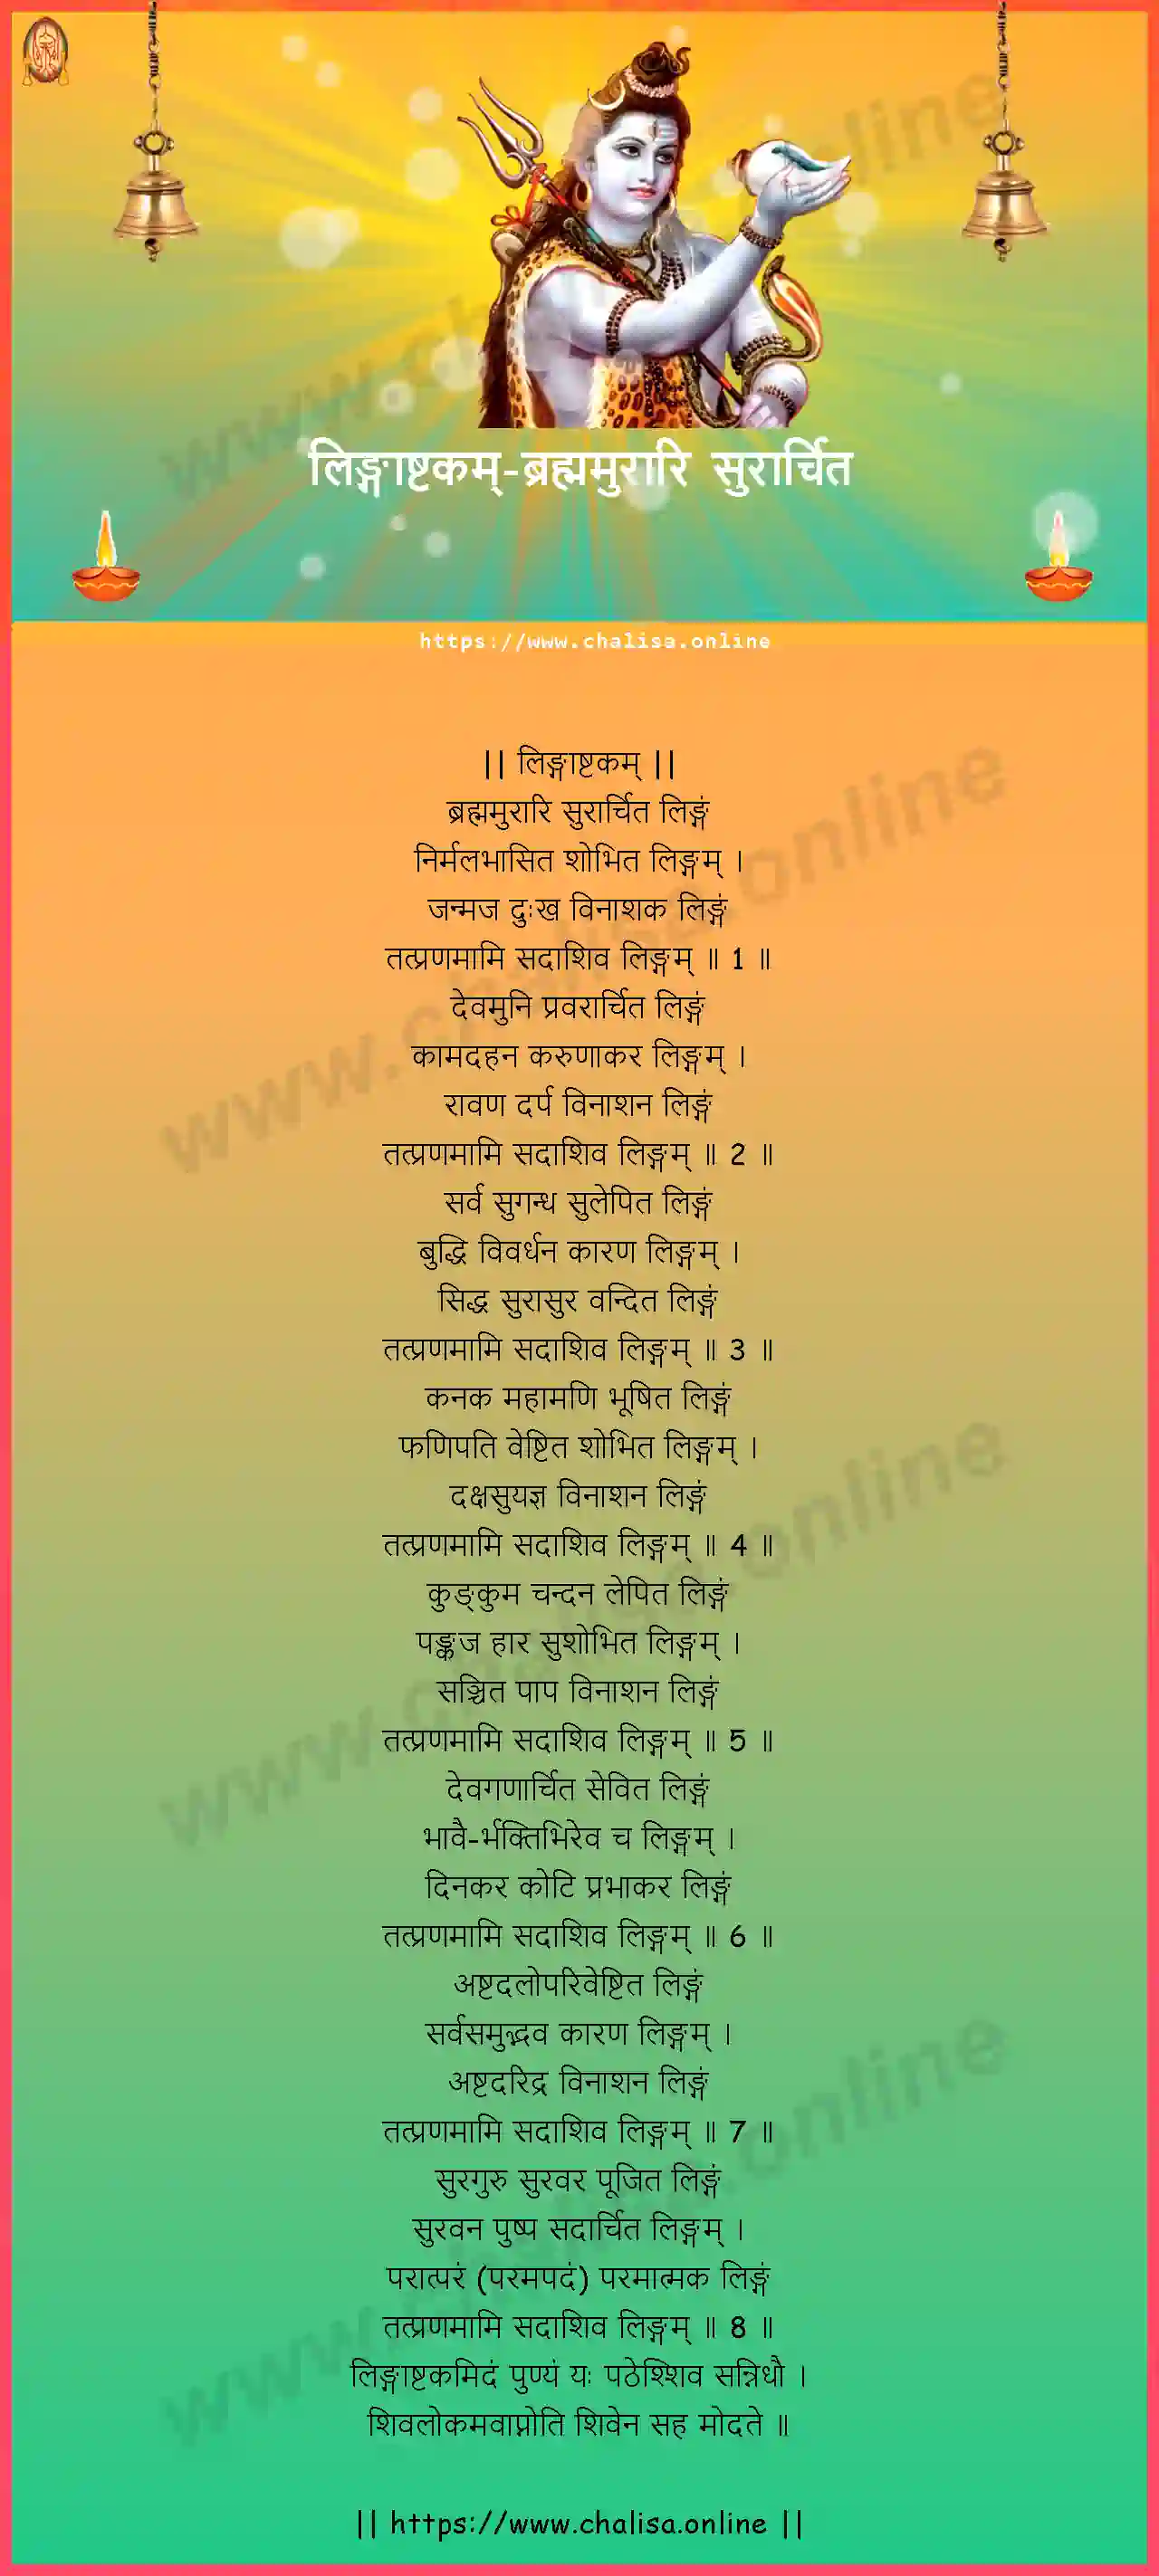 brahmamurari-surarchita-lingashtakam-sanskrit-sanskrit-lyrics-download